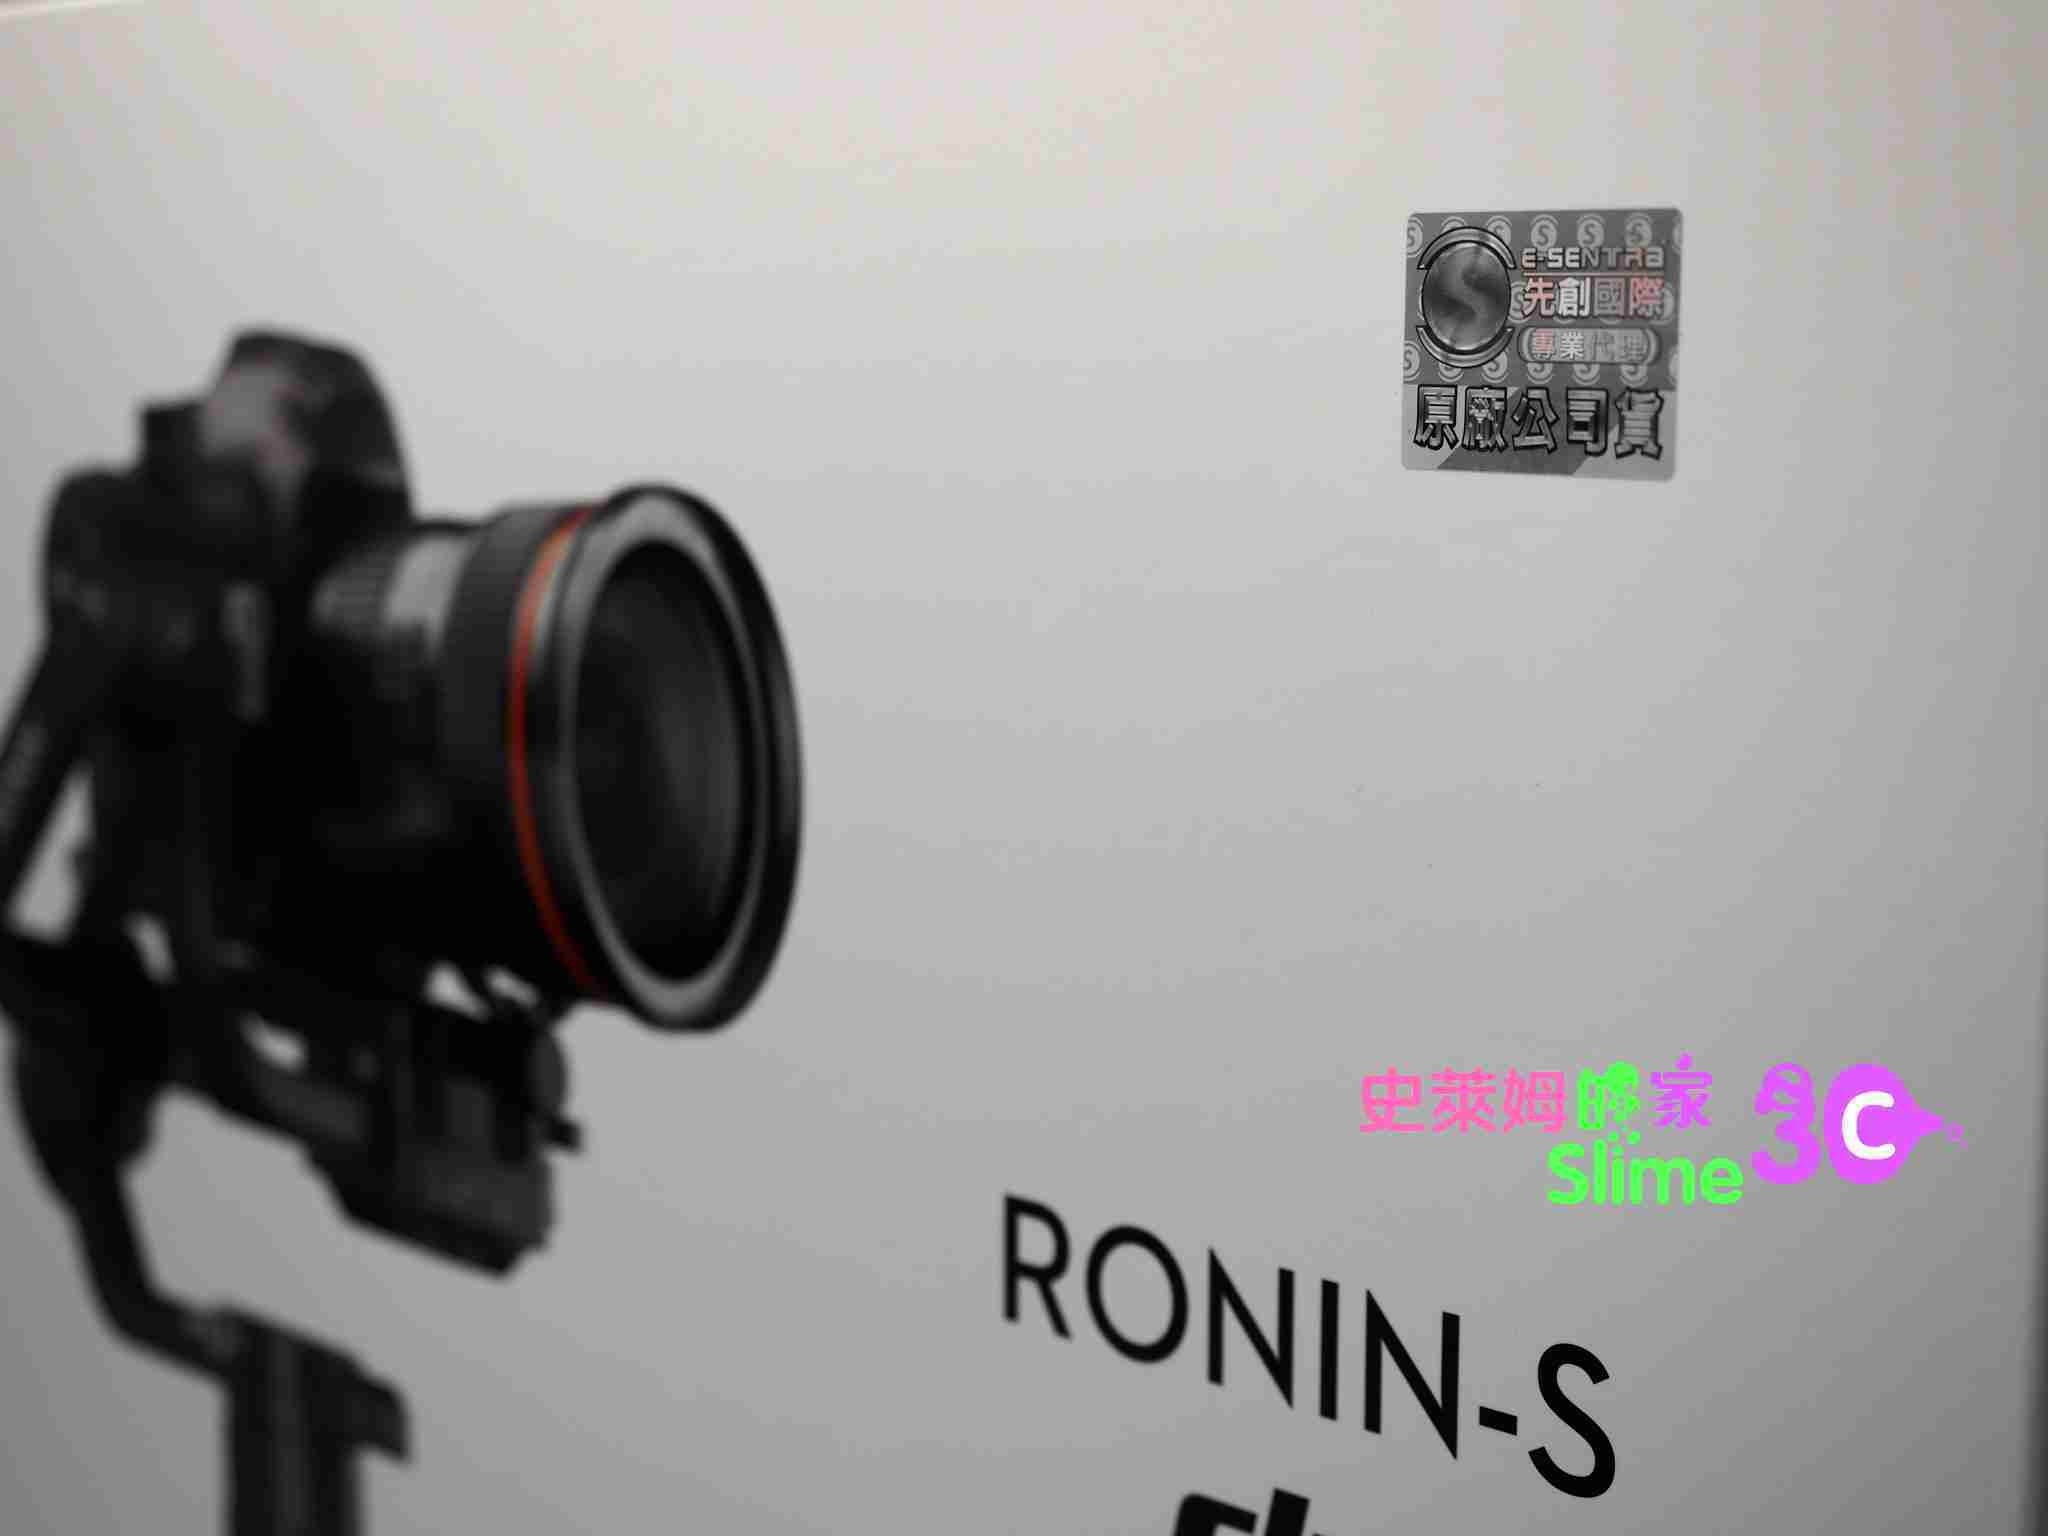 【史萊姆的家】 DJI Ronin-S 專業級 單眼相機用 三軸穩定器 【載重3.6kg】